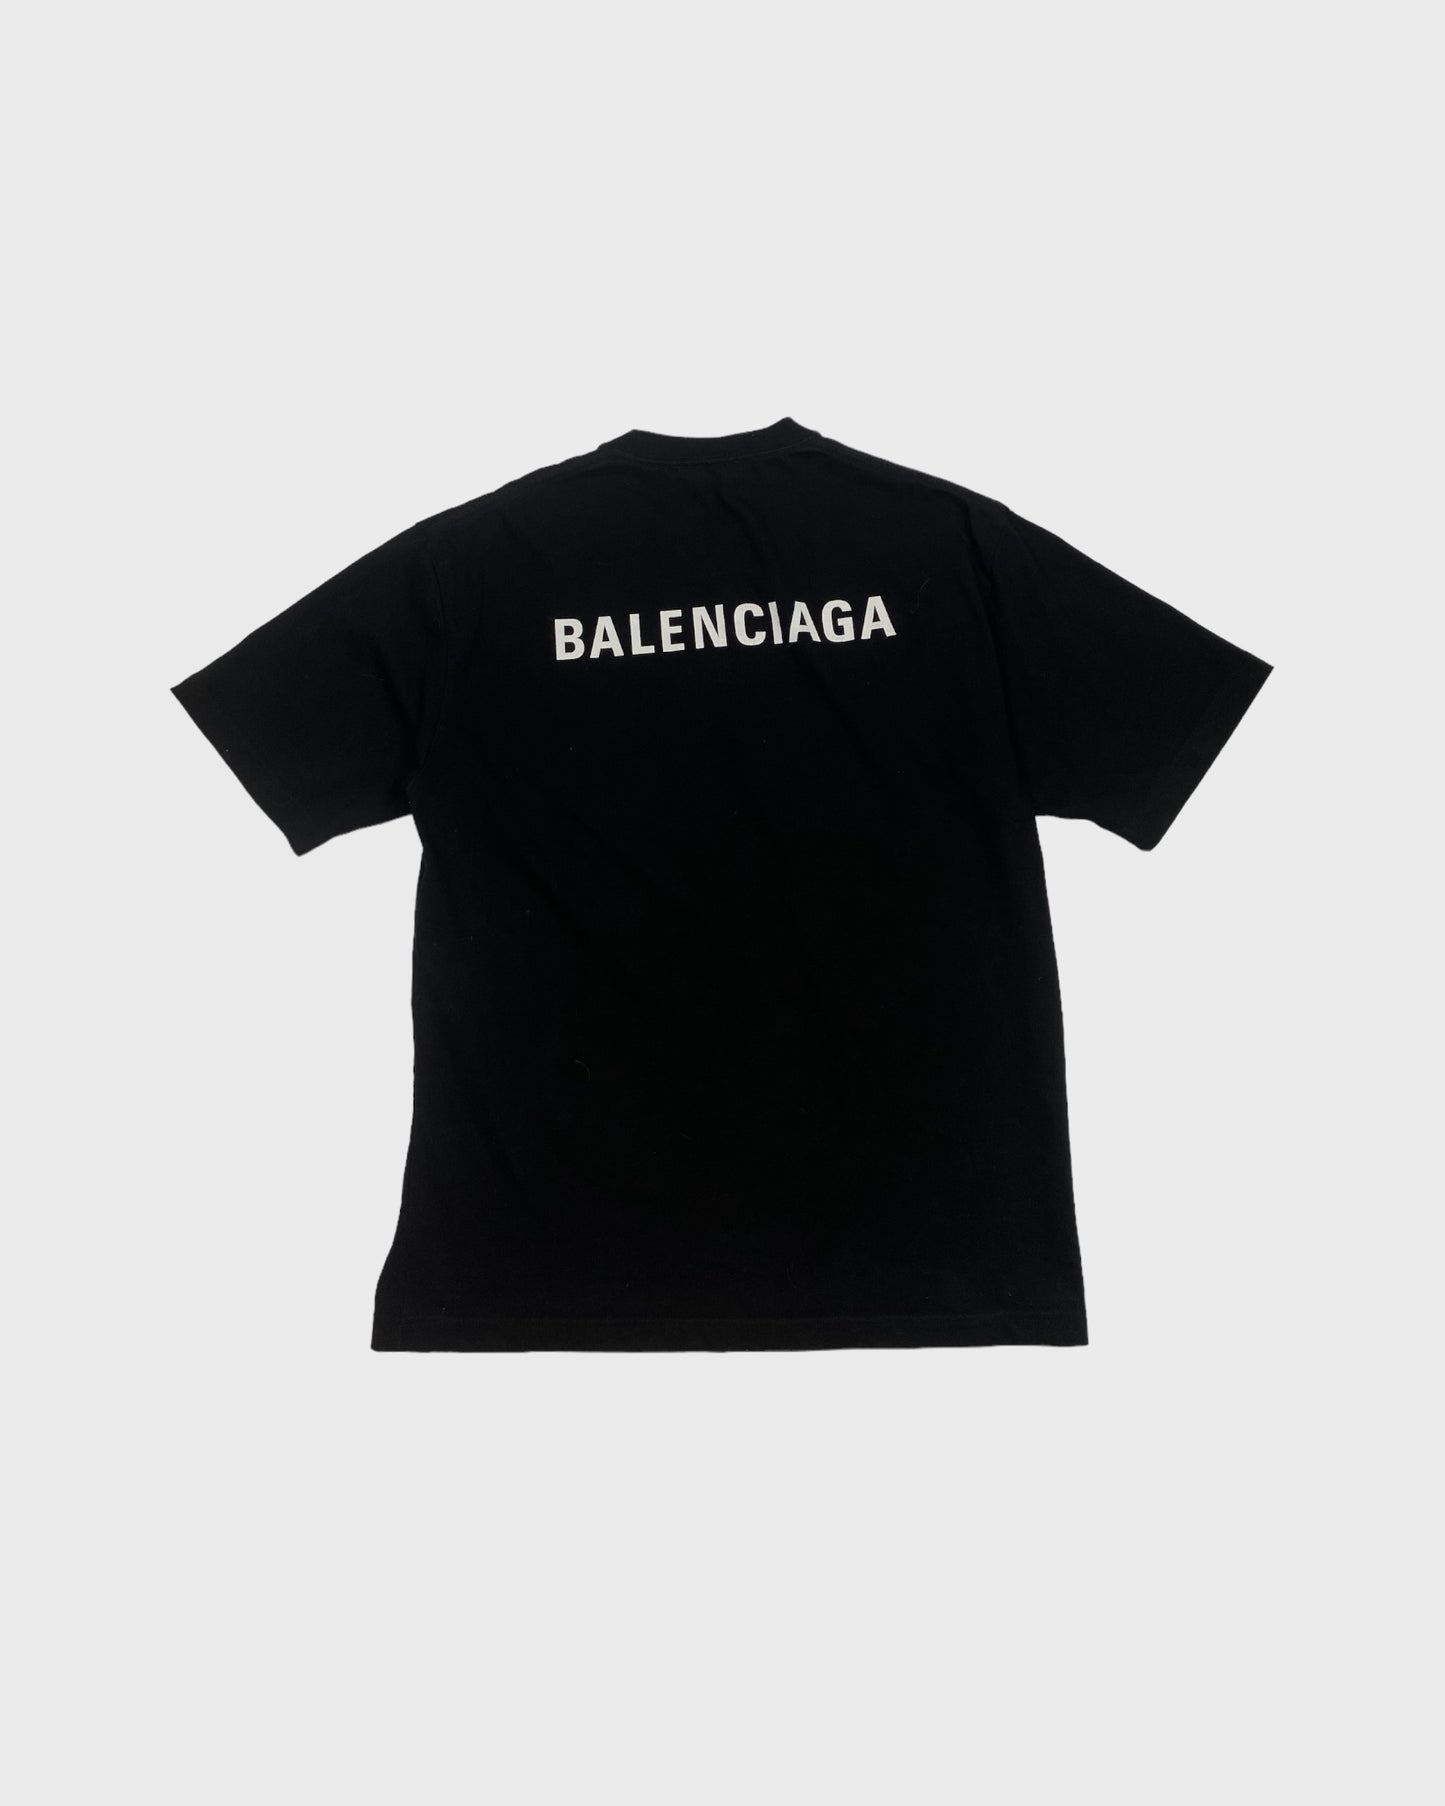 Balenciaga tee-shirt (L)